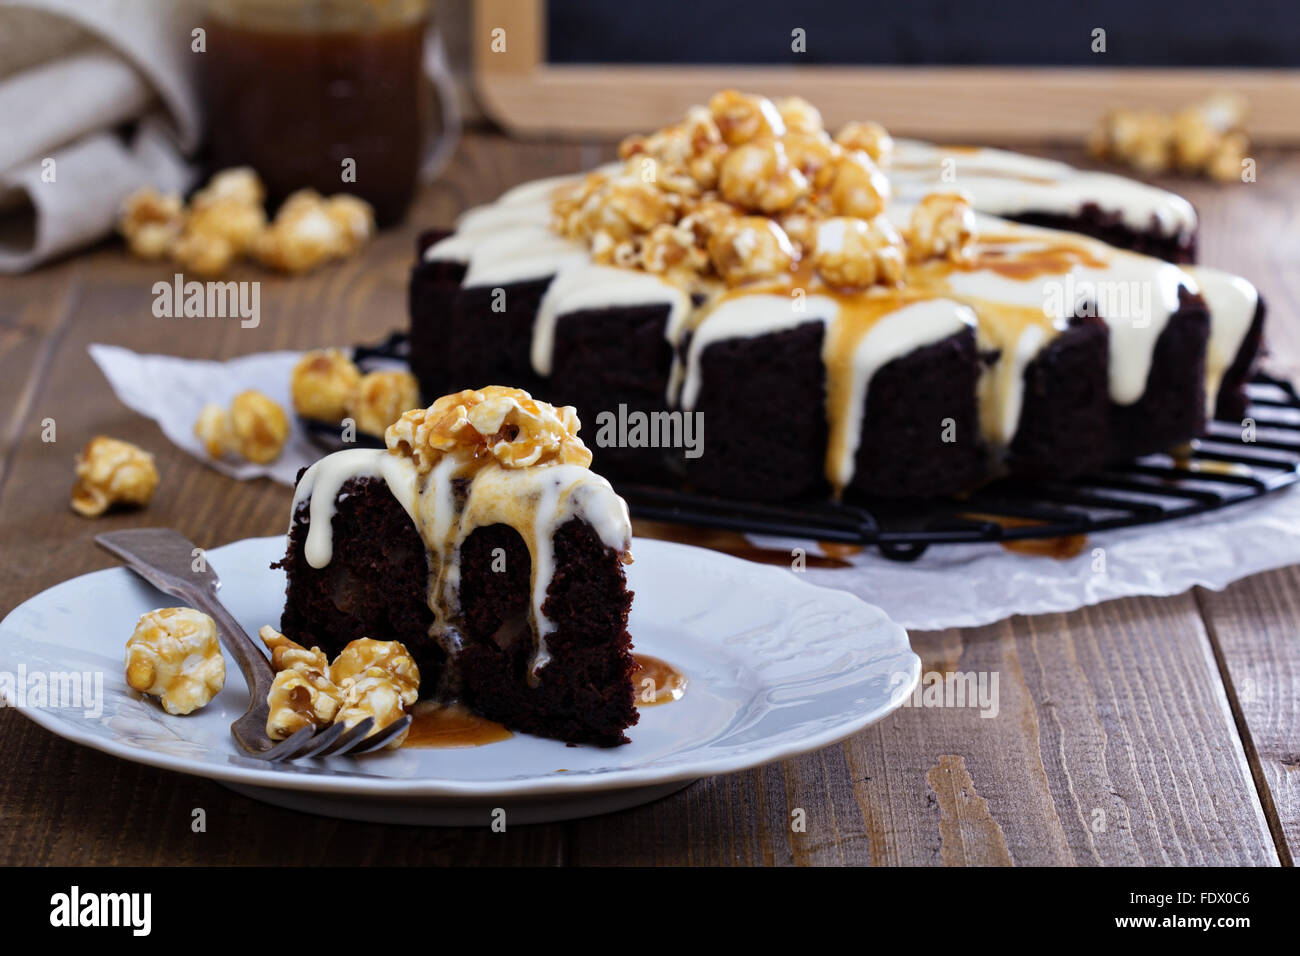 Schokoladen-Ingwer-Birne Kuchen mit Frischkäse-Glasur und Caramel-topping  Stockfotografie - Alamy